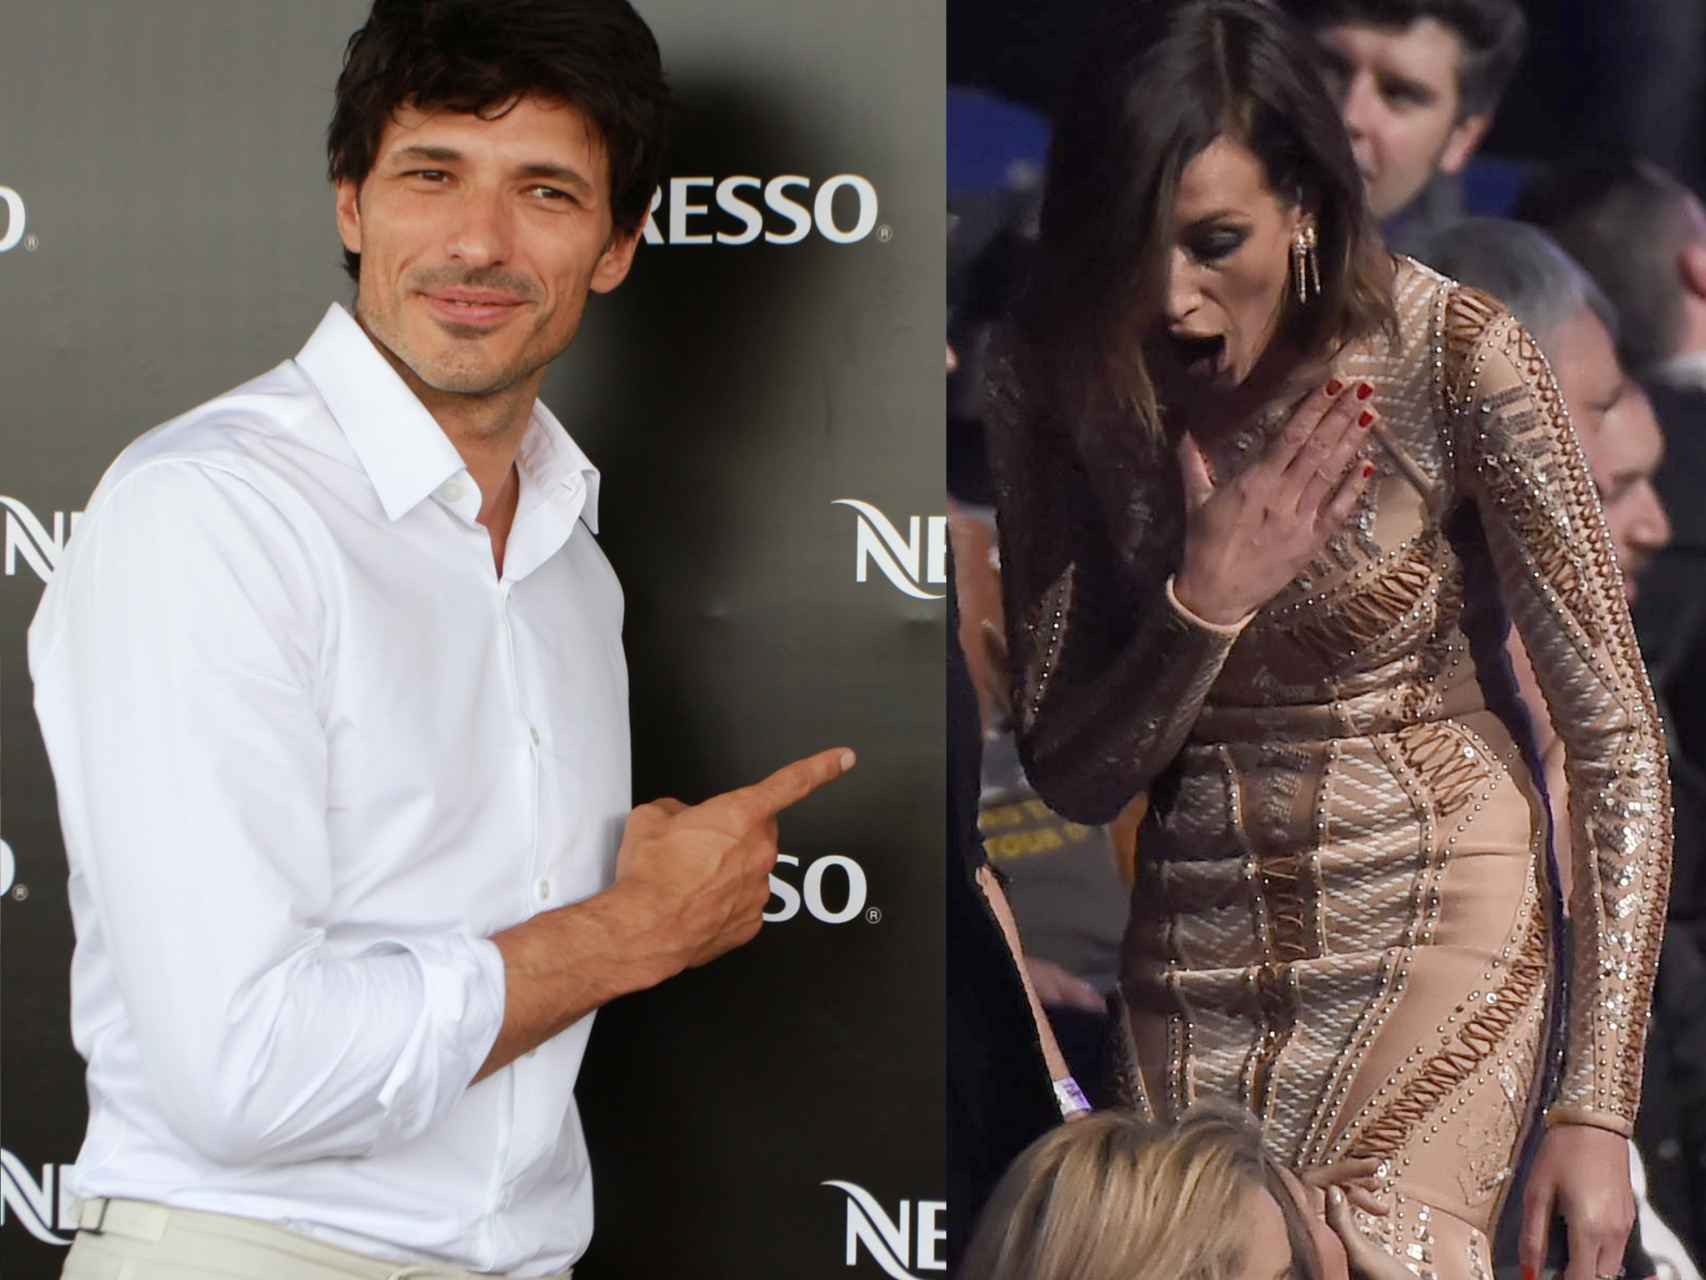 Velencoso y Álvarez en diferentes presentaciones como modelos y celebrities